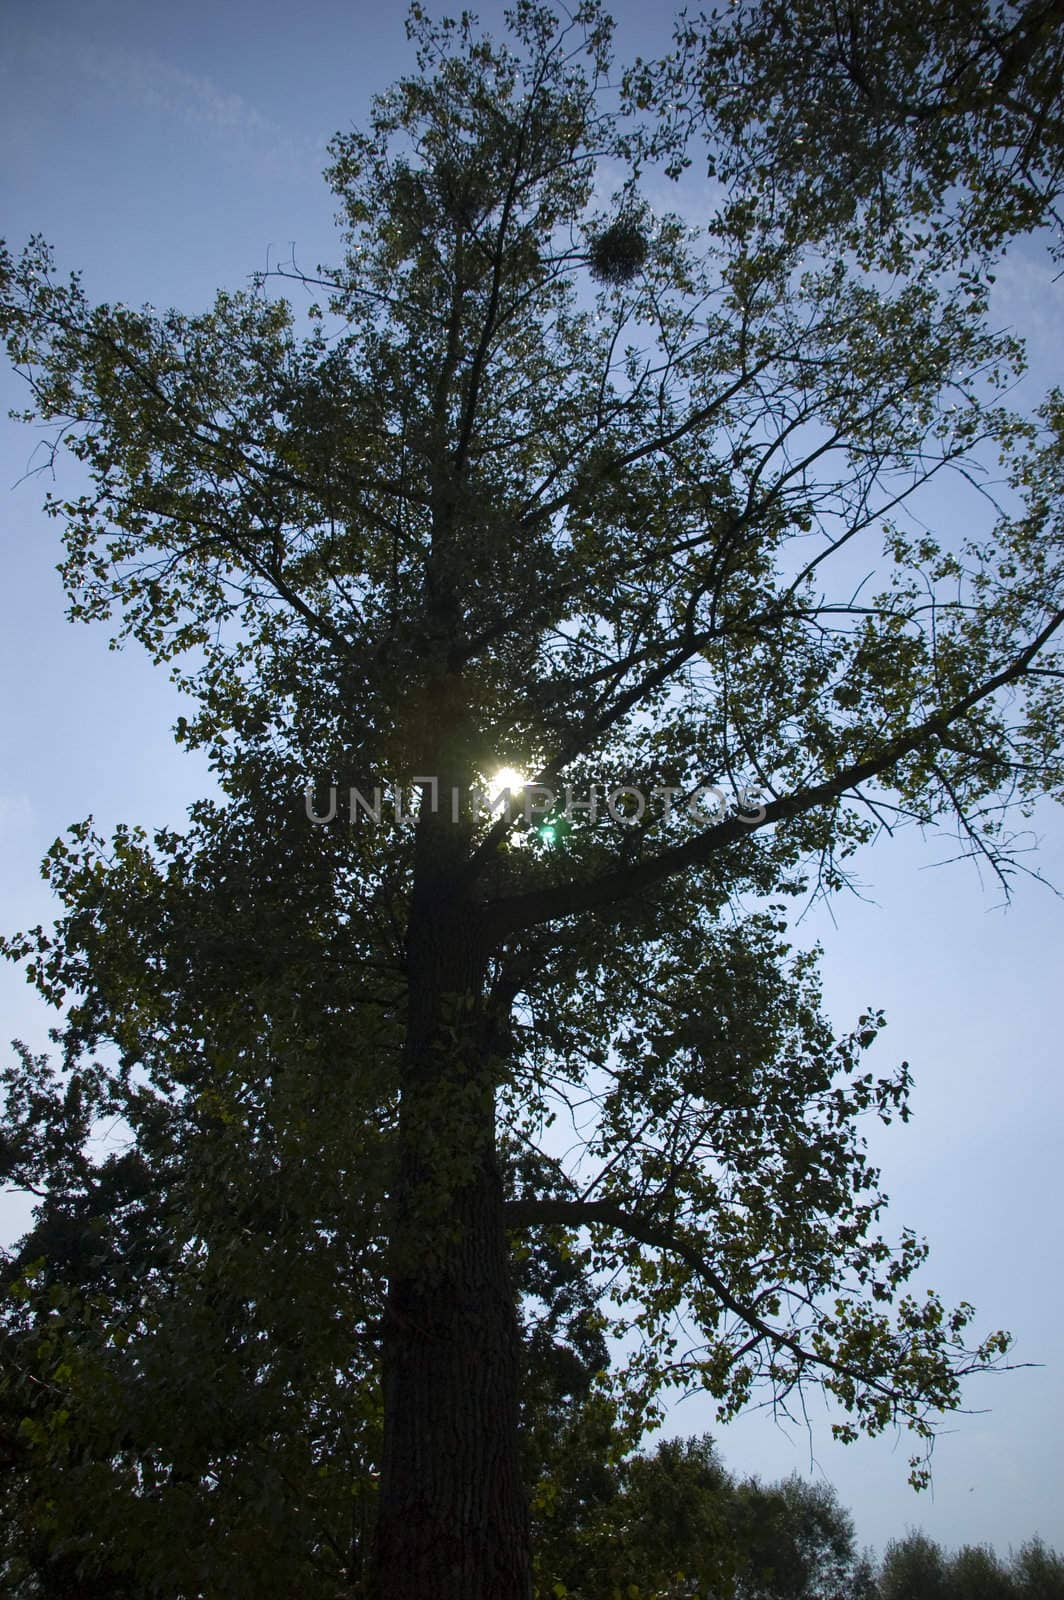 sun on blue sky hiding behind tree